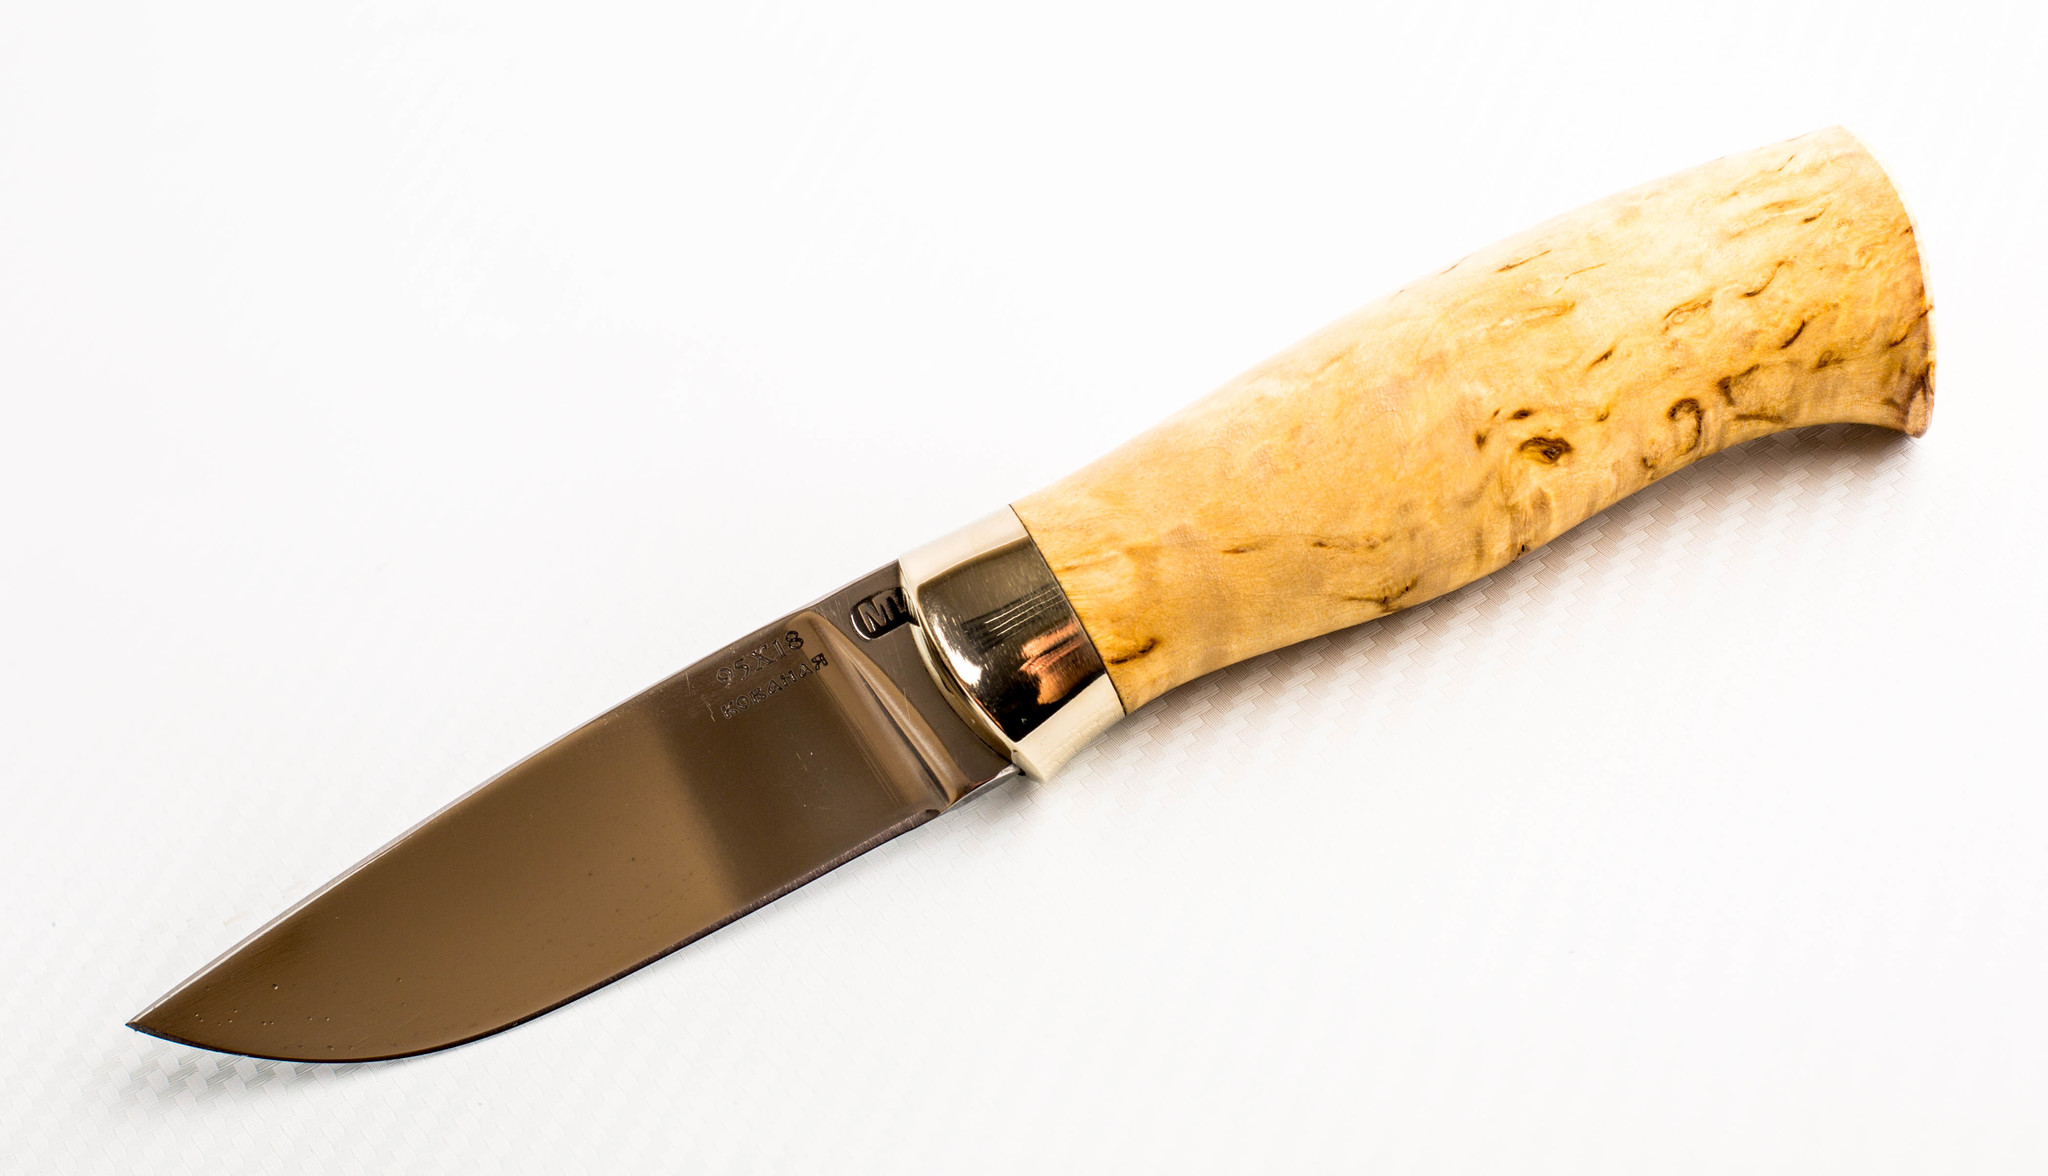 

Нож МТ-66, сталь 95x18, карельская береза